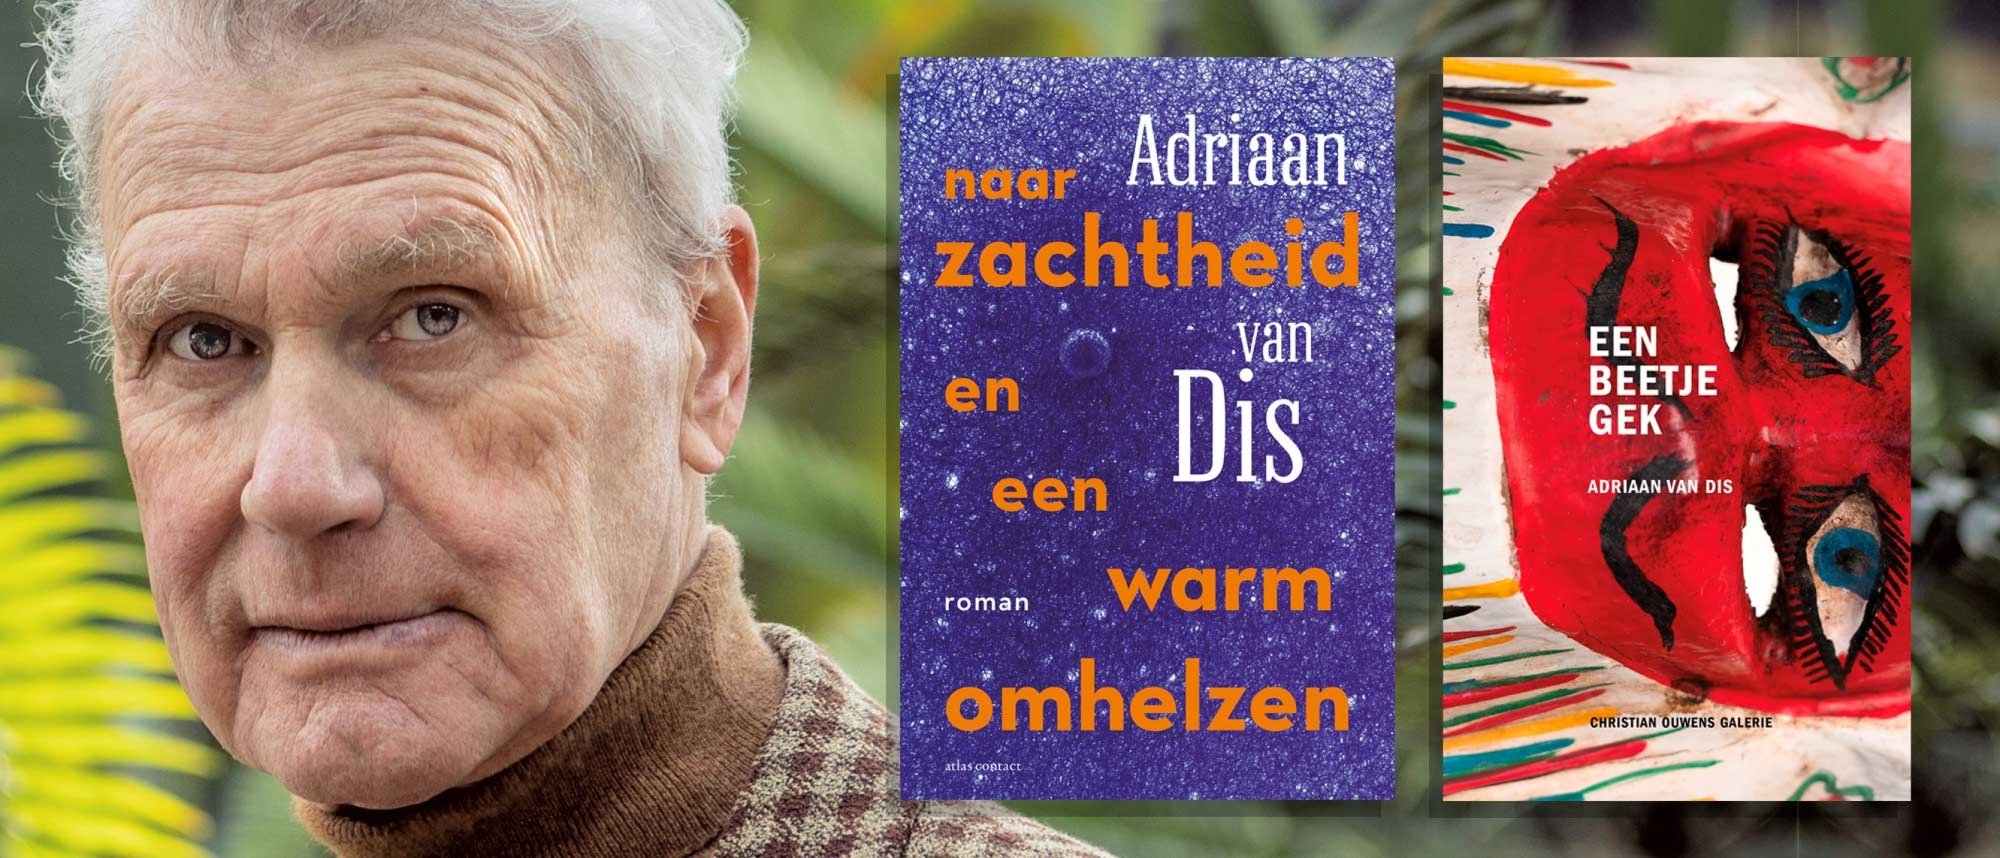 Boekpresentatie & interview Adriaan van Dis